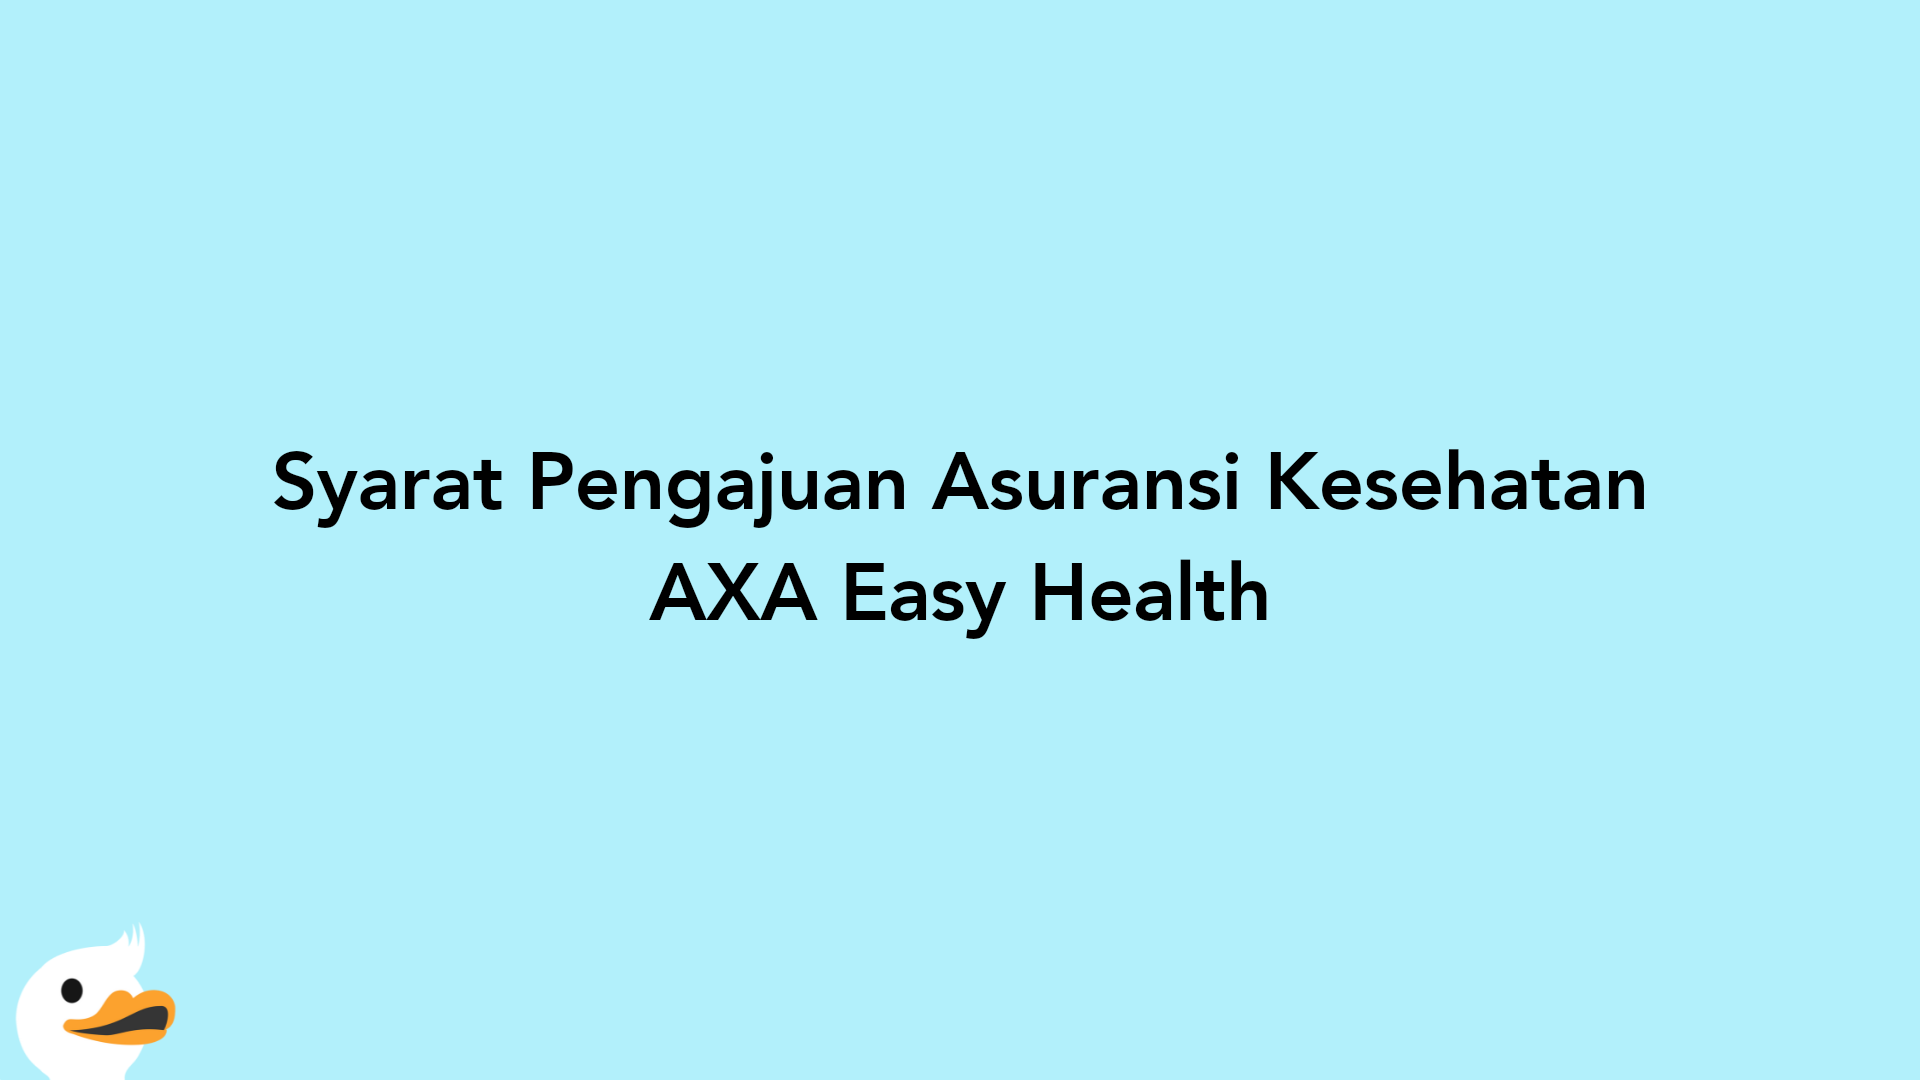 Syarat Pengajuan Asuransi Kesehatan AXA Easy Health